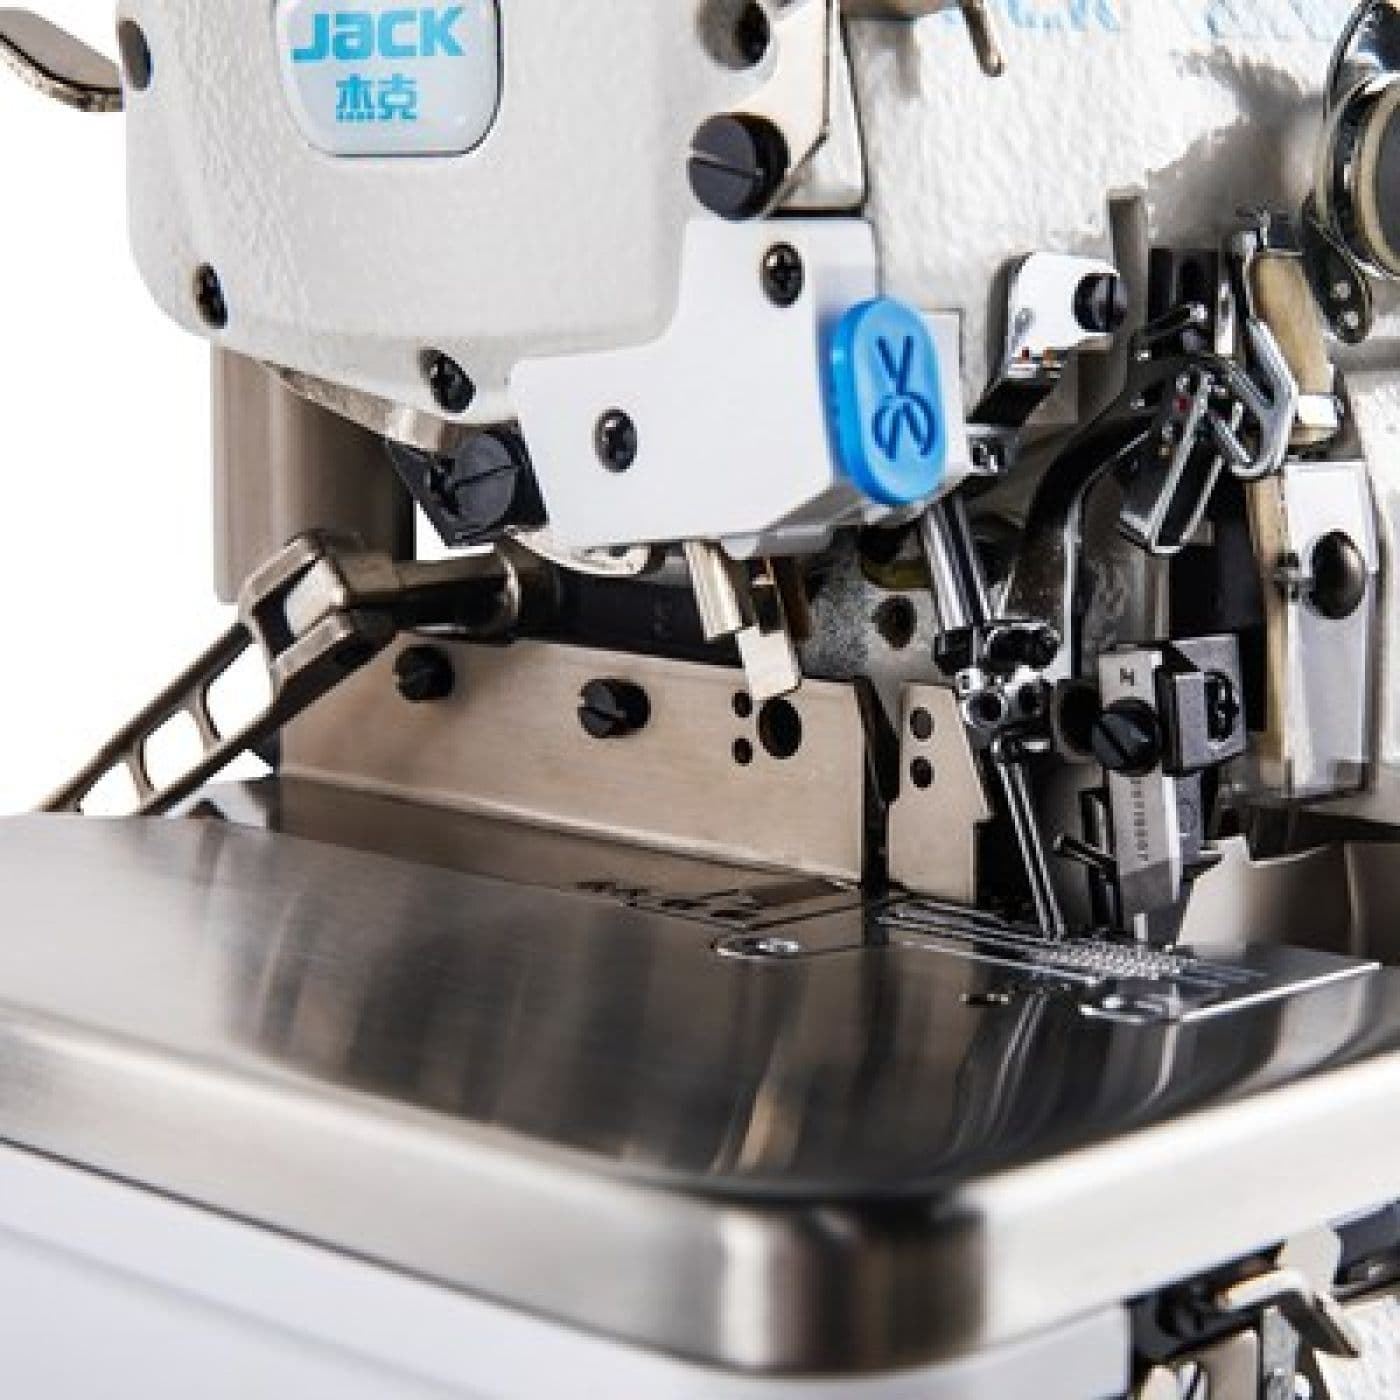 JACK C2-4-M03 (4 HILOS) - Máquina de coser industrial remalladora - Imagen 2